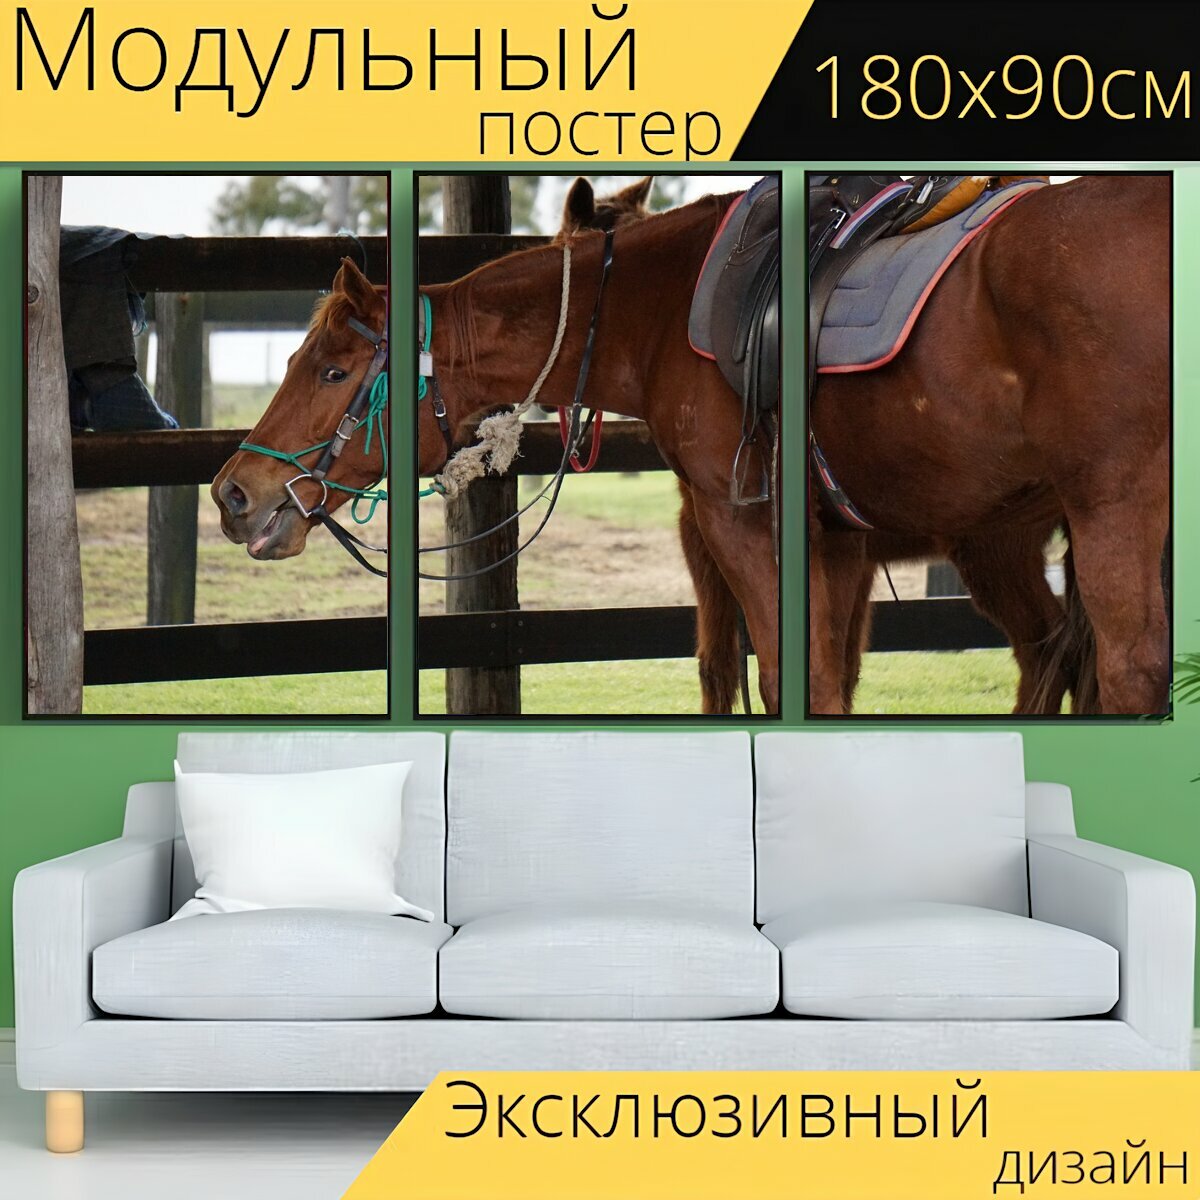 Модульный постер "Лошадь, стабильный, животное" 180 x 90 см. для интерьера